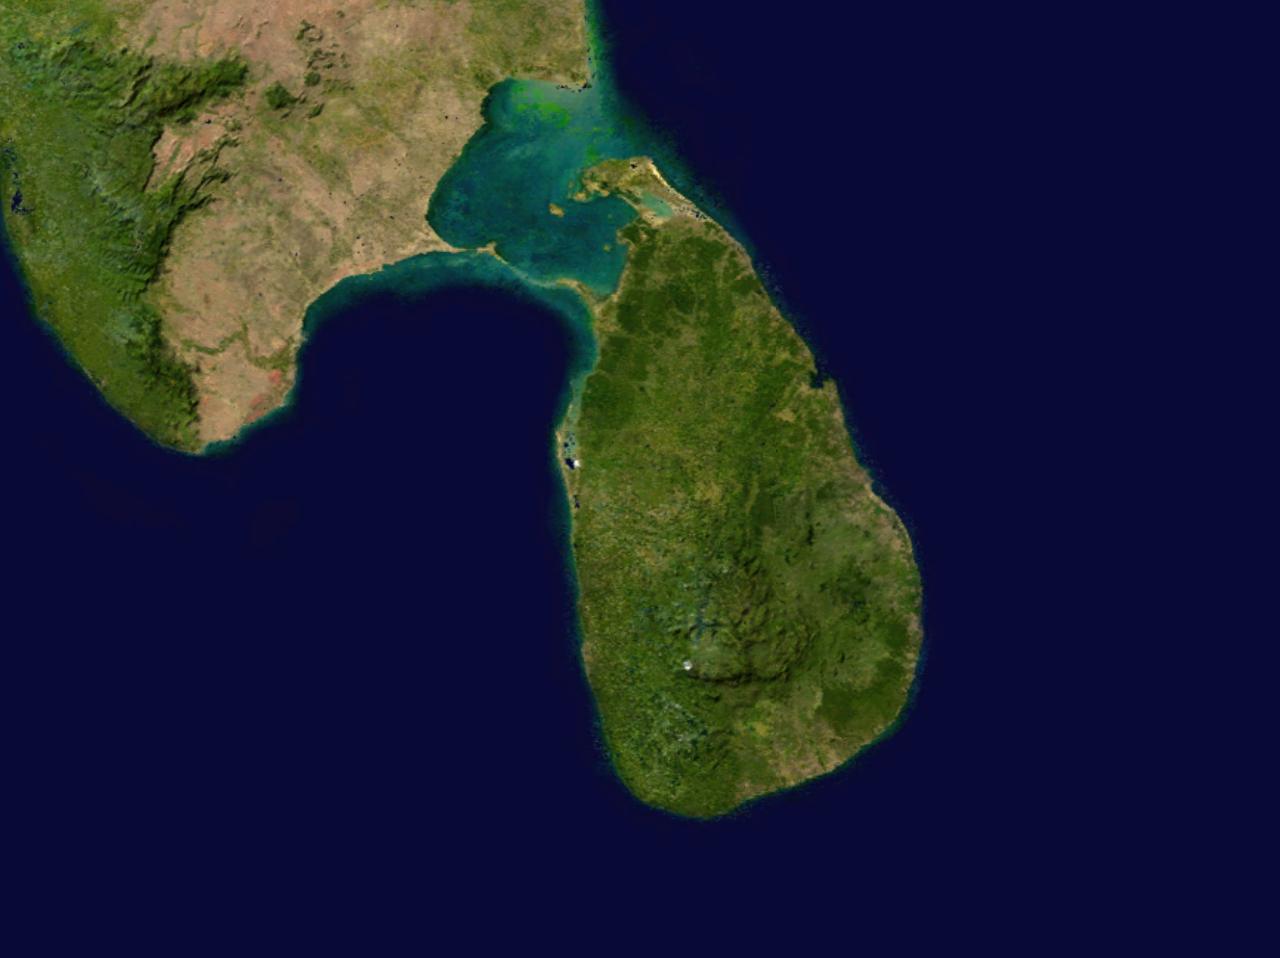 Tận hưởng cảm giác khám phá vùng đất đầy bí ẩn và nét đẹp tự nhiên của Sri Lanka thông qua bản đồ vệ tinh trực tuyến của chúng tôi. Từ các bãi biển tuyệt đẹp đến các ngọn núi lớn, bạn sẽ được khám phá toàn bộ địa hình và thiên nhiên tuyệt vời của Sri Lanka qua một cái nhìn ấn tượng.